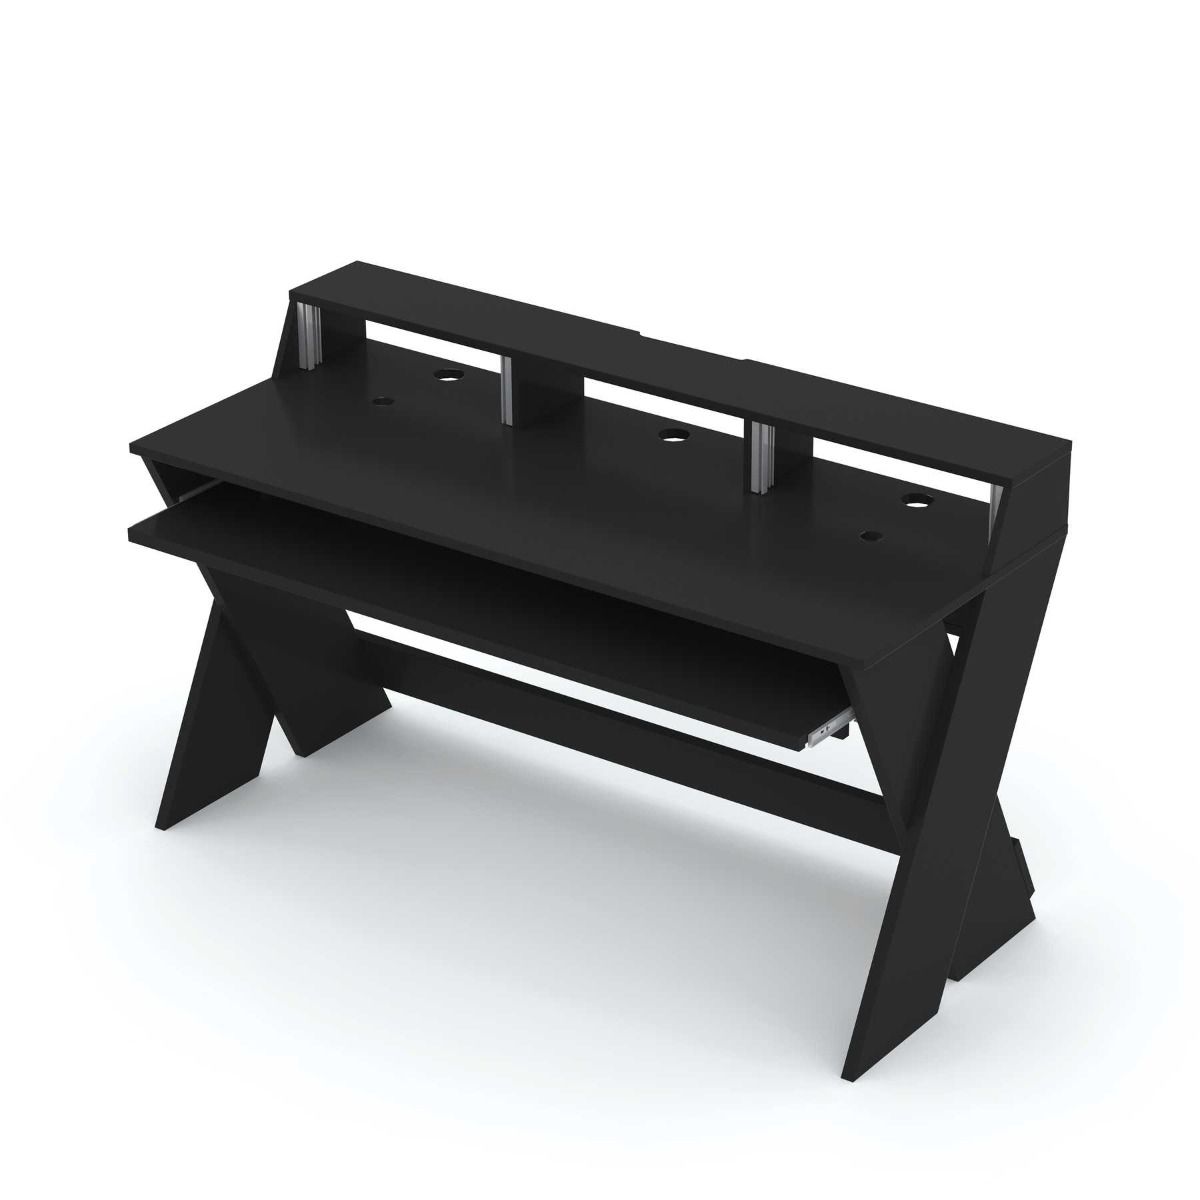 Аксессуары для DJ оборудования Glorious Sound Desk Pro Black стойка для стола zeapon vlogtopus desk mount kit dm h1